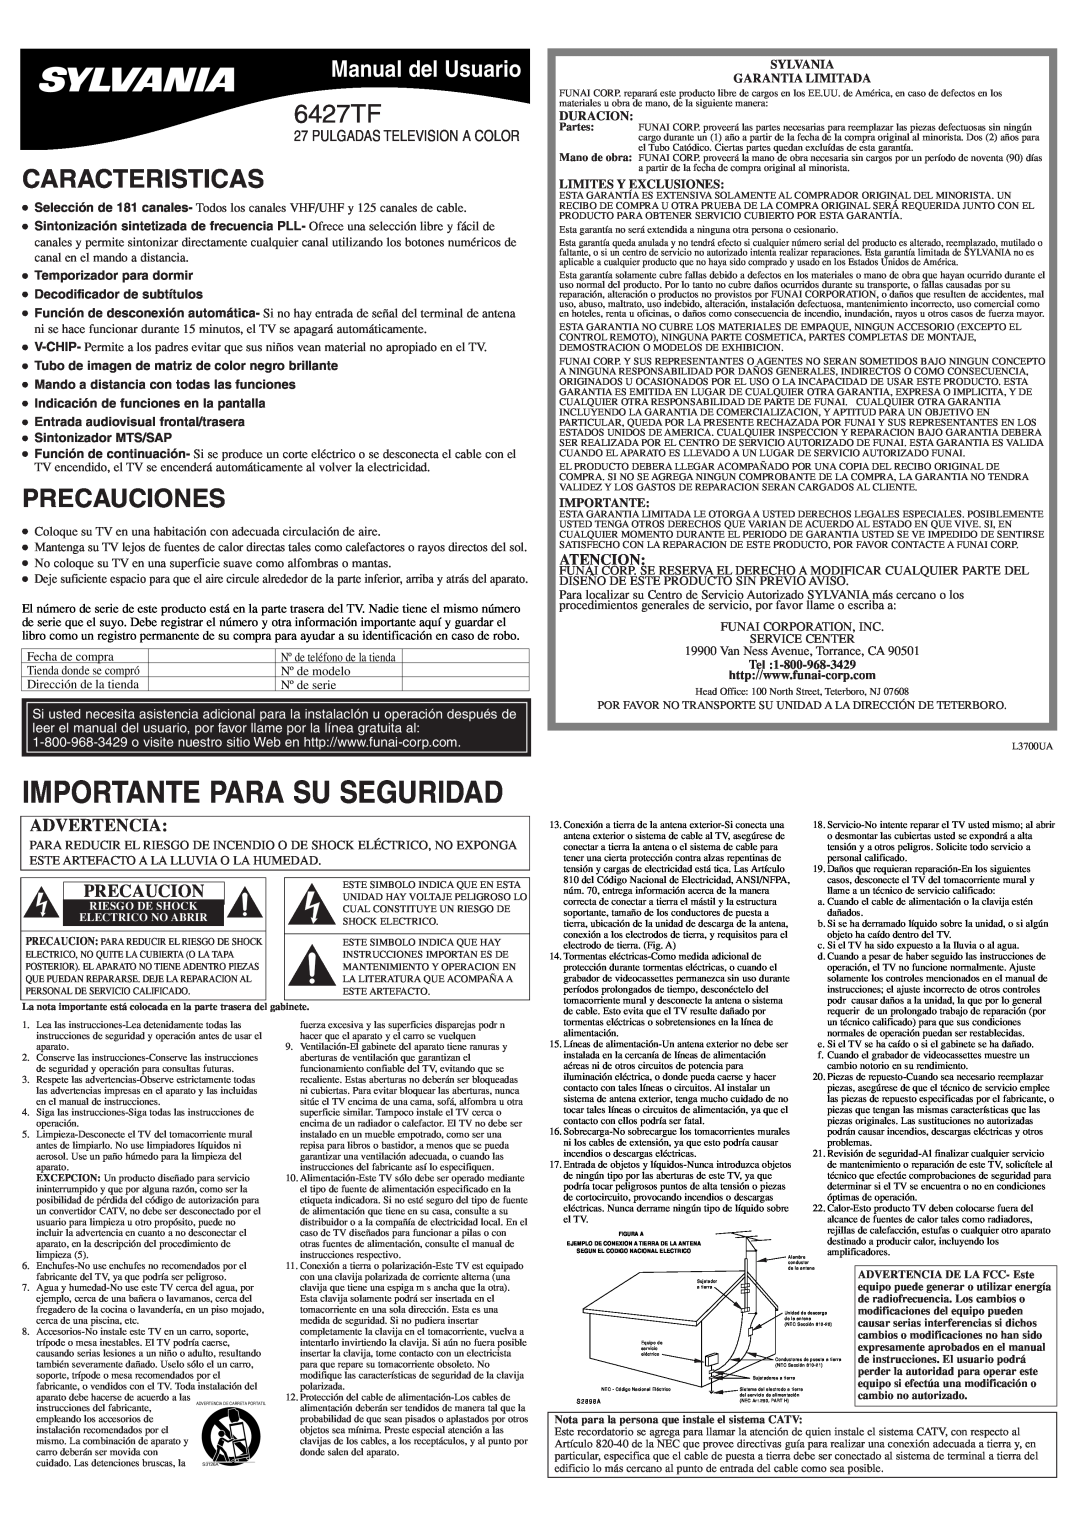 Sylvania 6427TF Caracteristicas, Precauciones, Manual del Usuario, Atencion, Sylvania Garantia Limitada, Duracion 